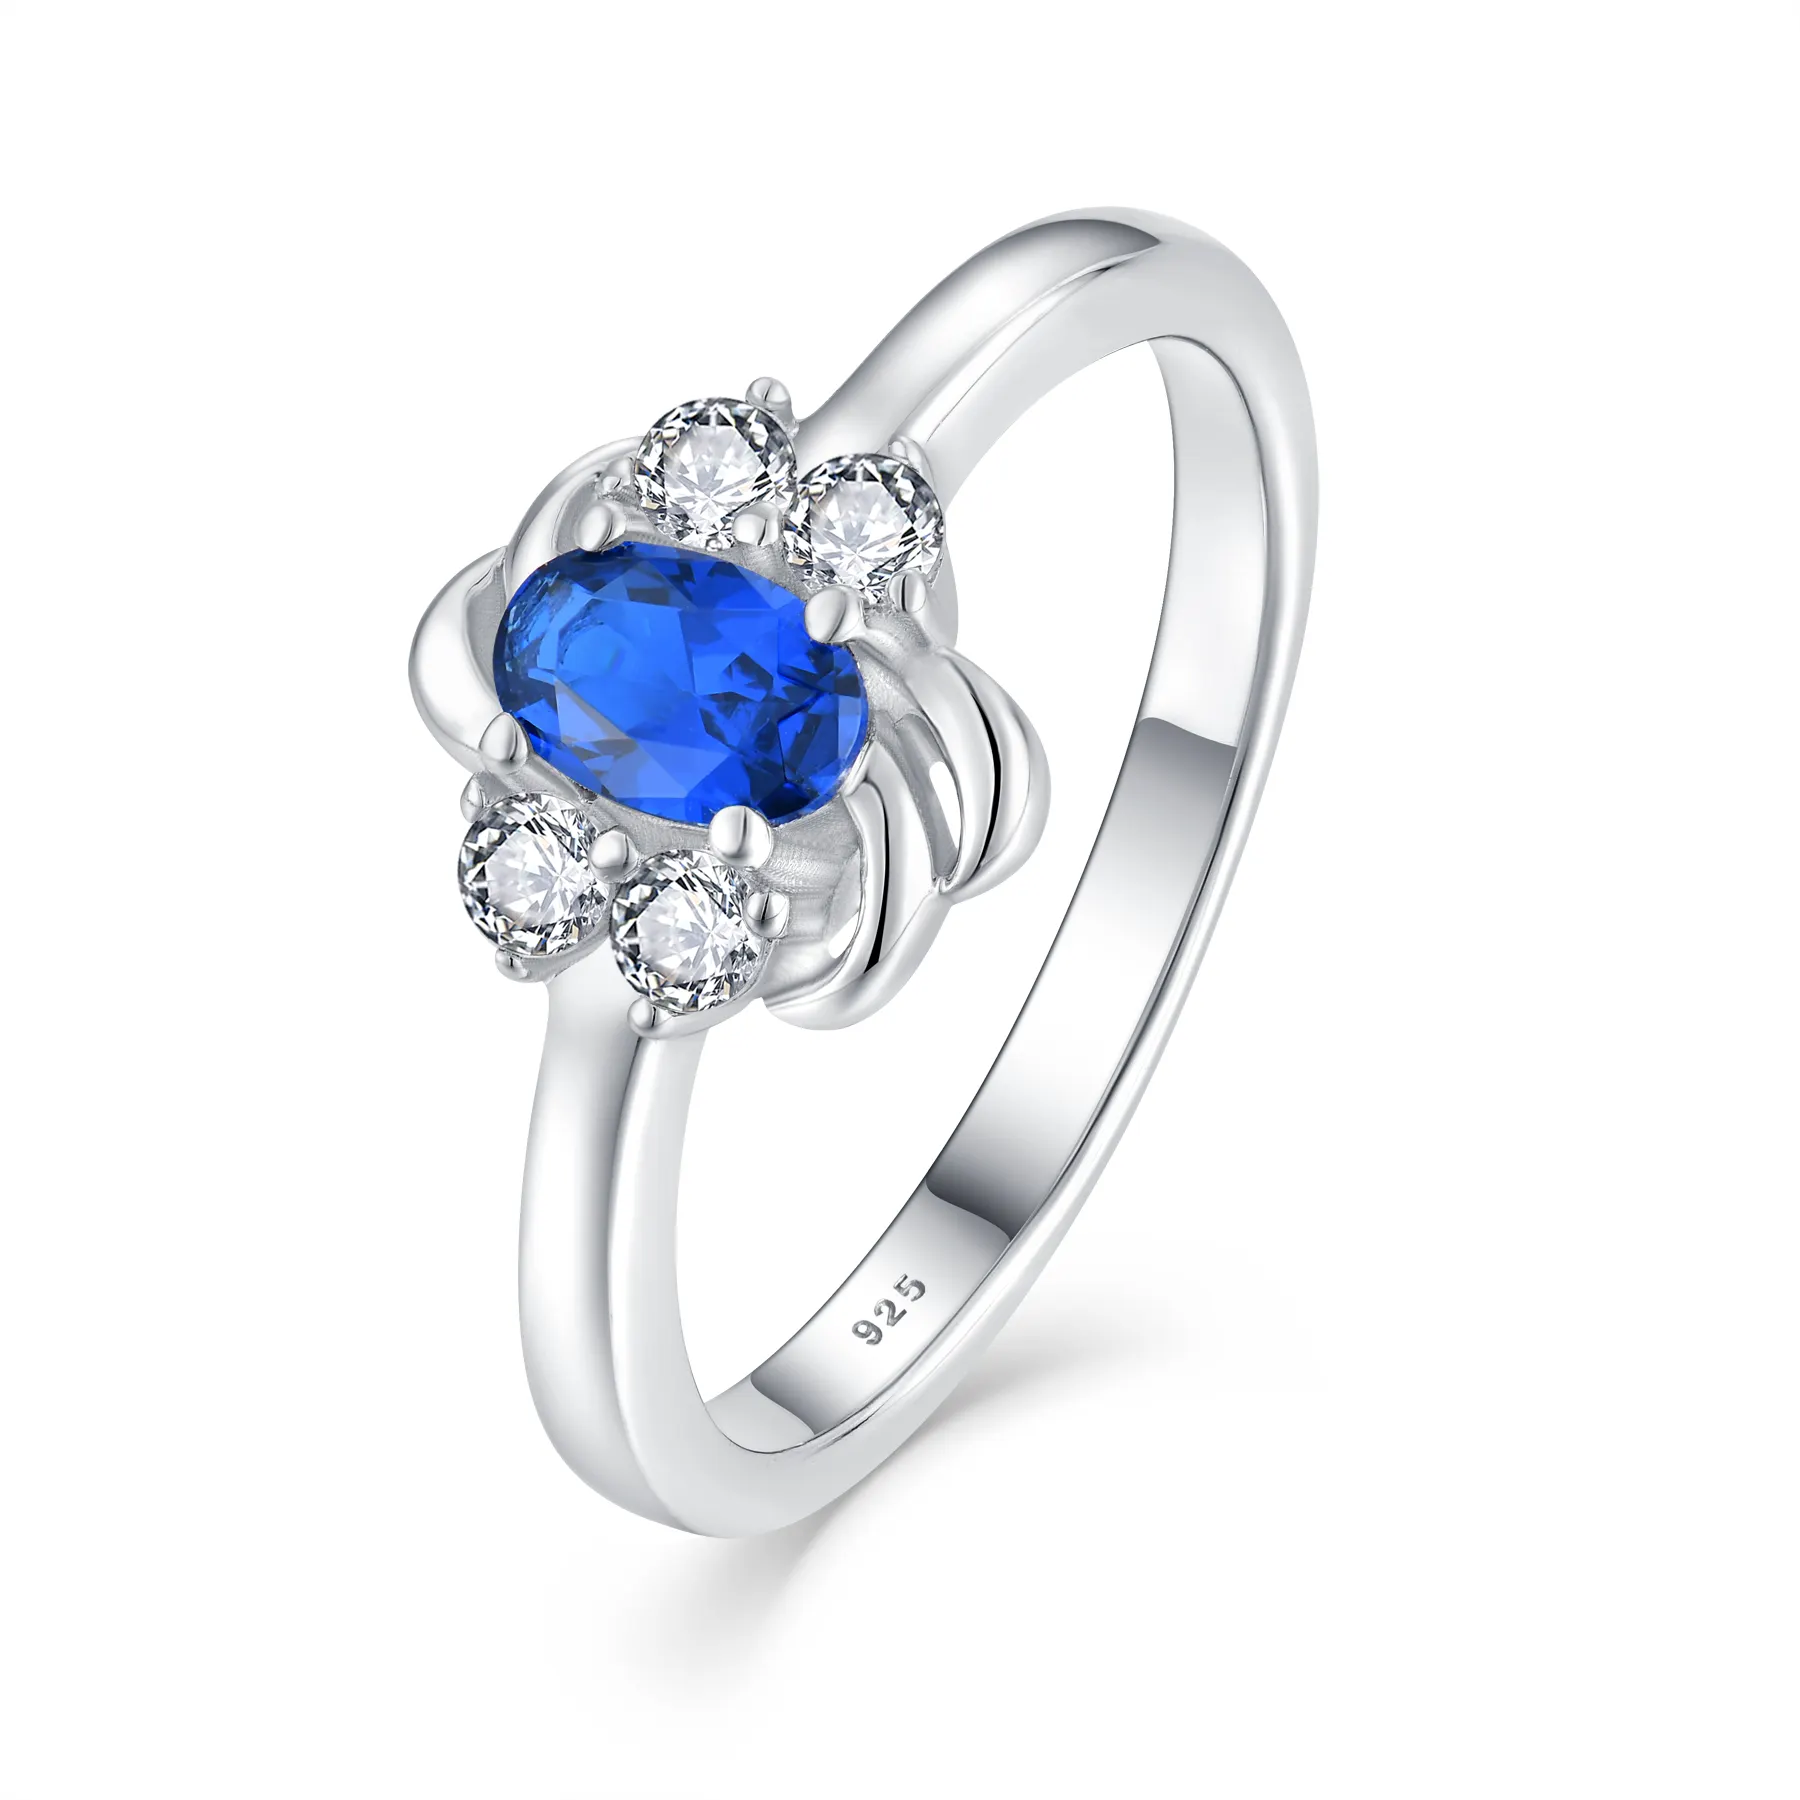 منتجات جديدة خاتم مرصع بالزركون على شكل لؤلؤة مجوهرات فاخرة حجر زرقاء مطلي بالفضة خاتم فضة إسترلينية كلاسيكي 925